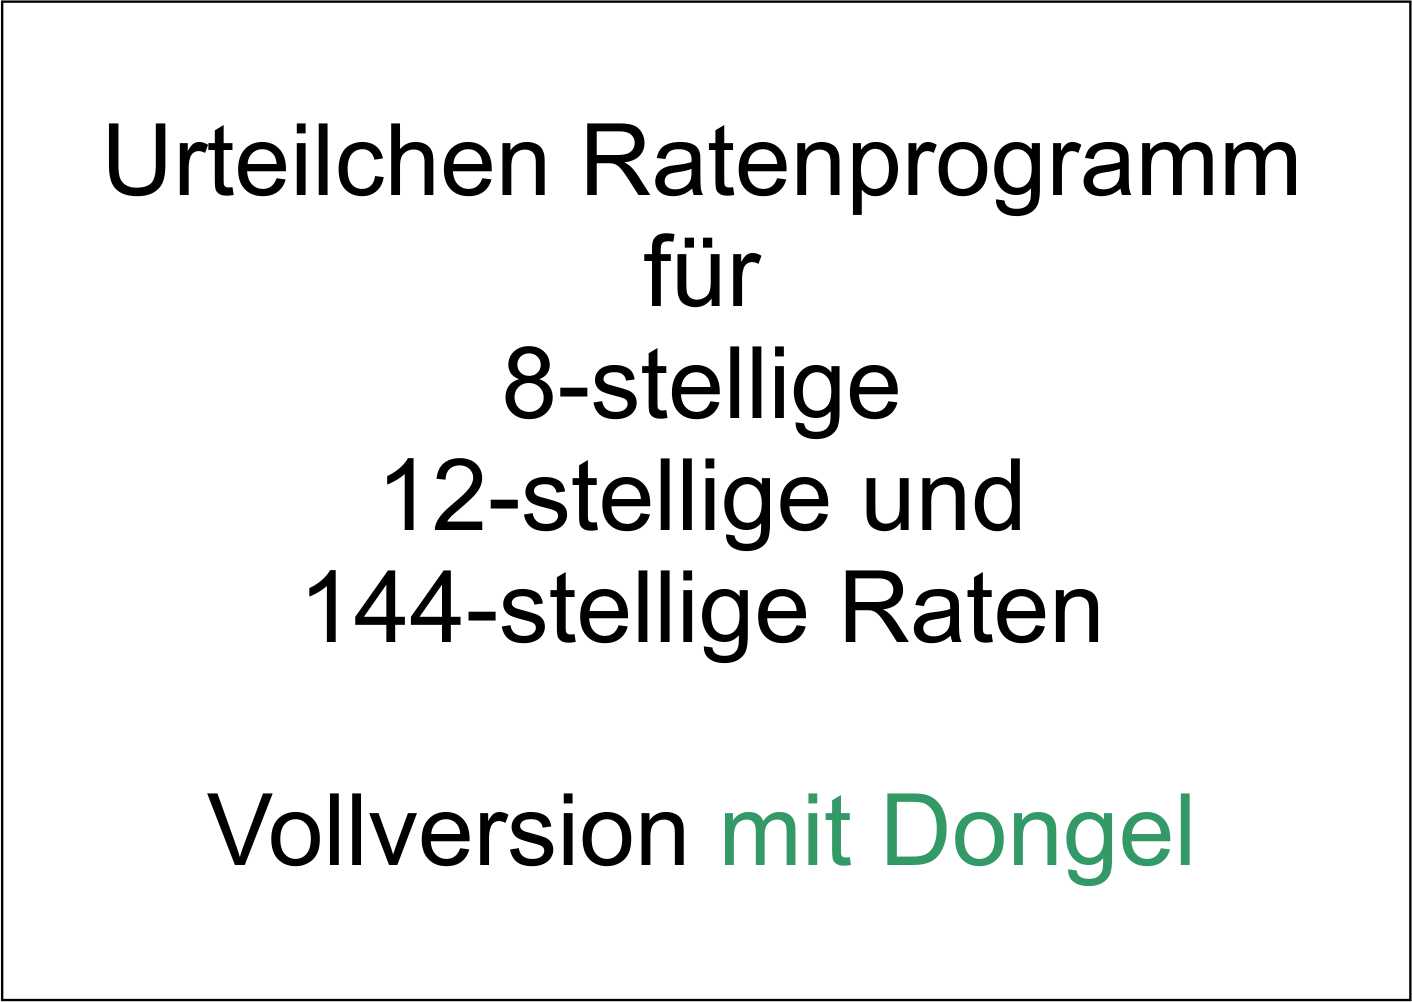 Ratenprogramm mit Dongel. Vollversion es berechnet 8, 12 und 144 stellige Raten